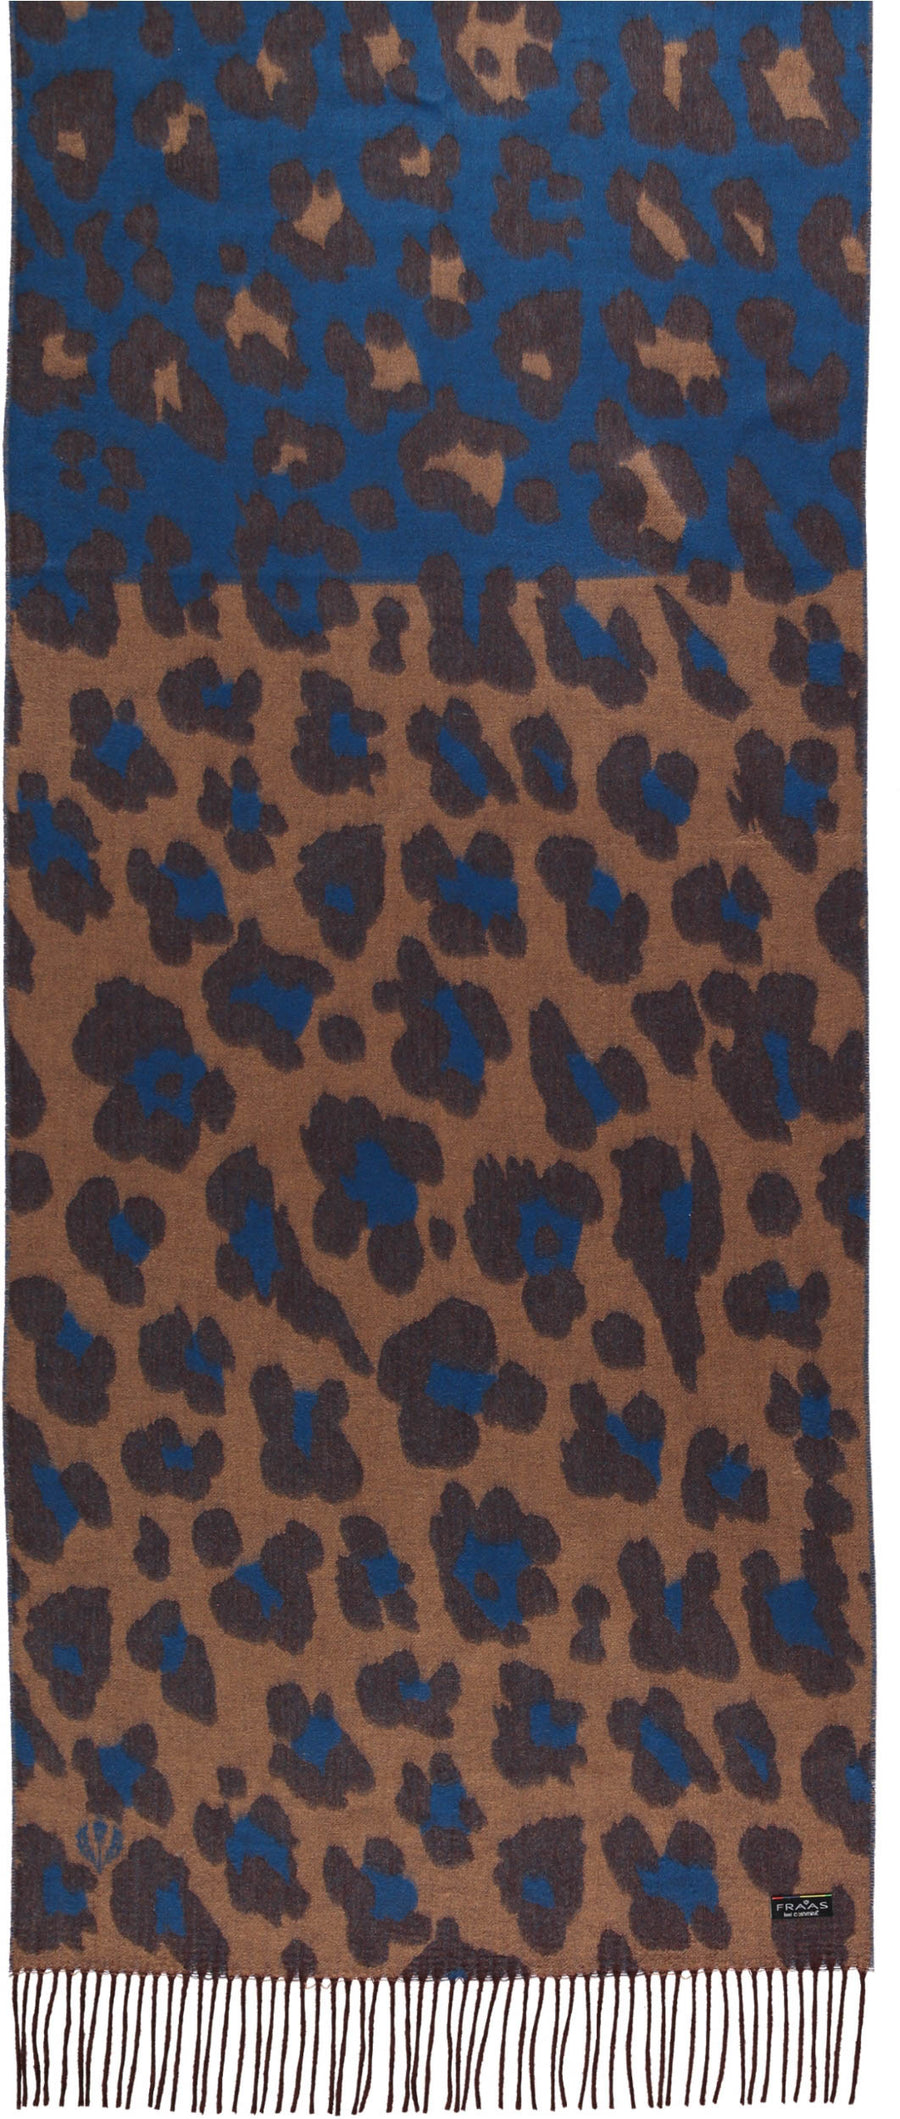 Fraas 625281 560 Cobalt Chocolate Tonal Animal Print Cashmink Wrap